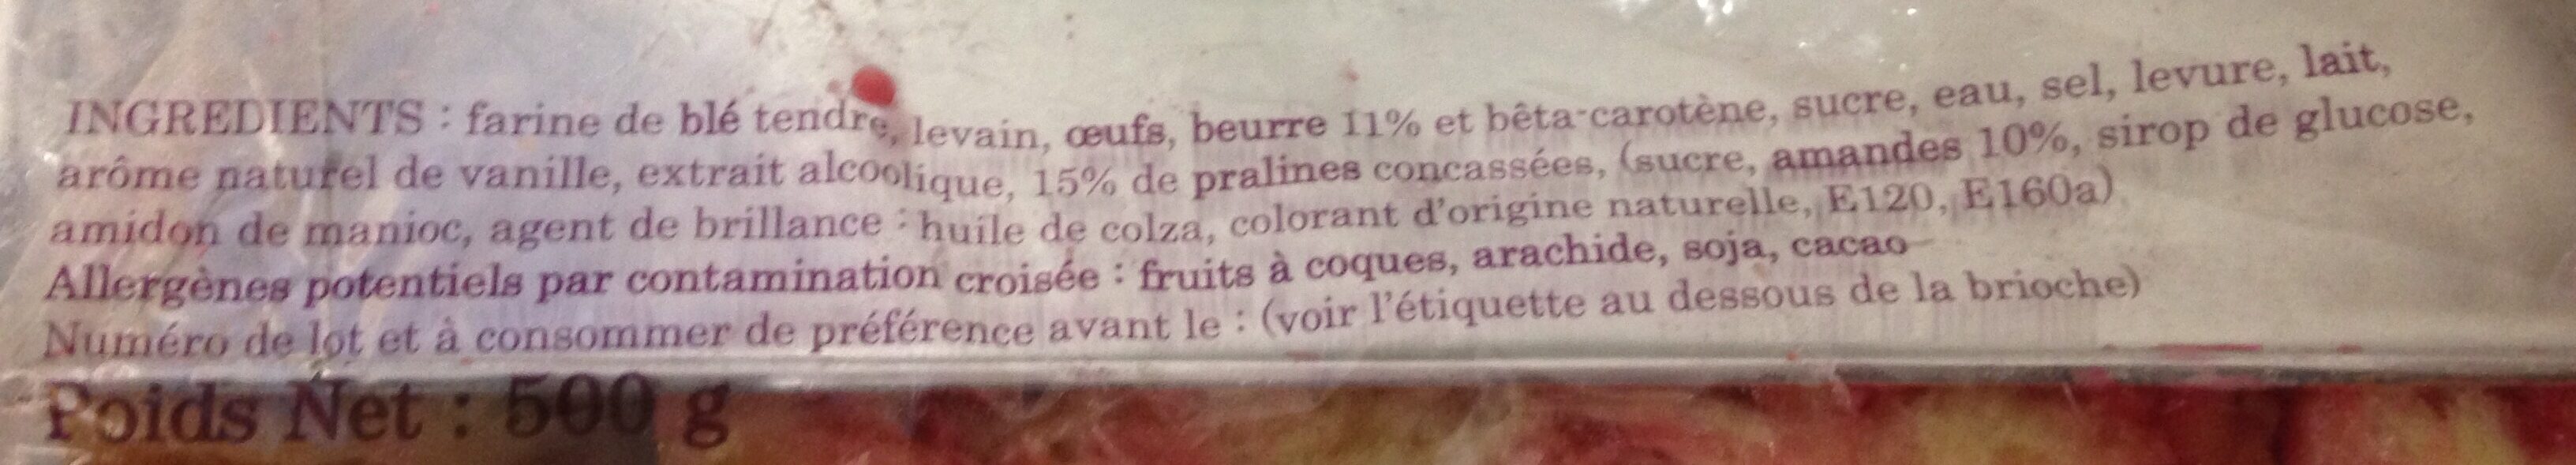 Brioche aux pralines - Ingredients - fr